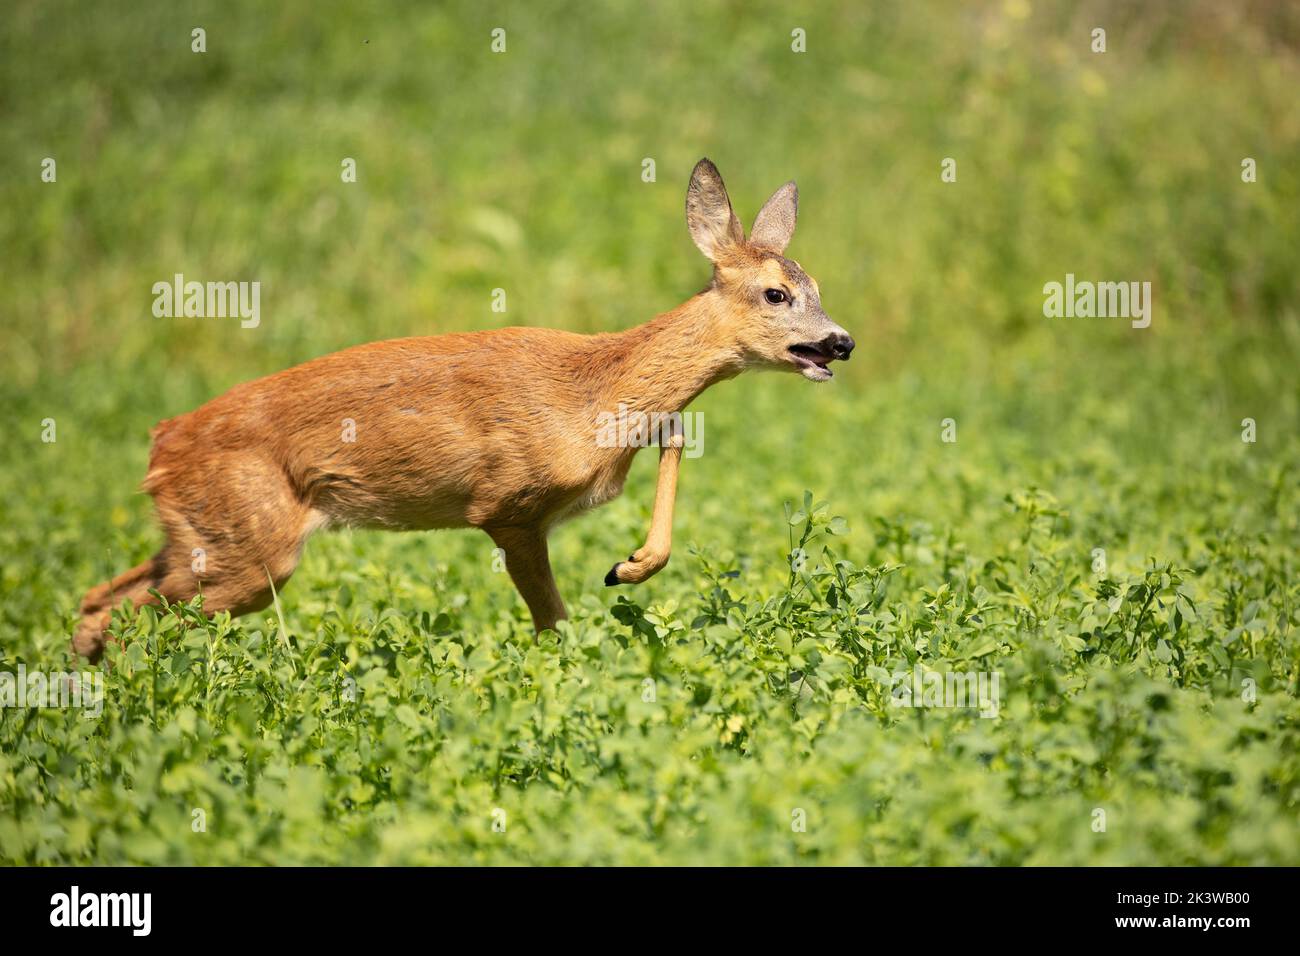 Roe deer, Capreolus capreolus, between green leaves of clover, meadow. Stock Photo